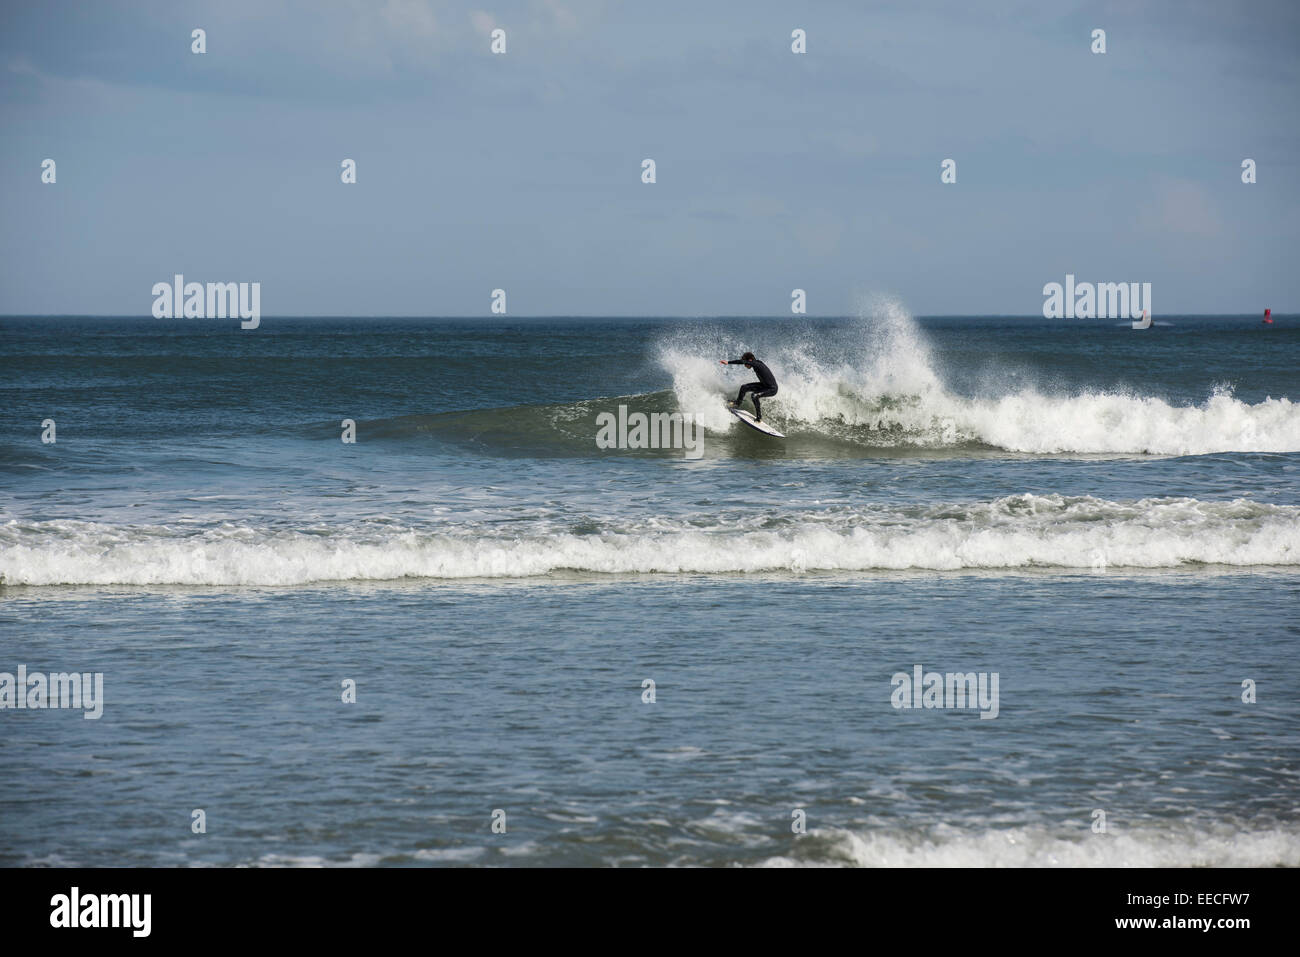 Une douzaine de mineurs combinaison noire réduit sur une vague qu'il surfe sur la côte est de la Floride près de Daytona Beach. Banque D'Images